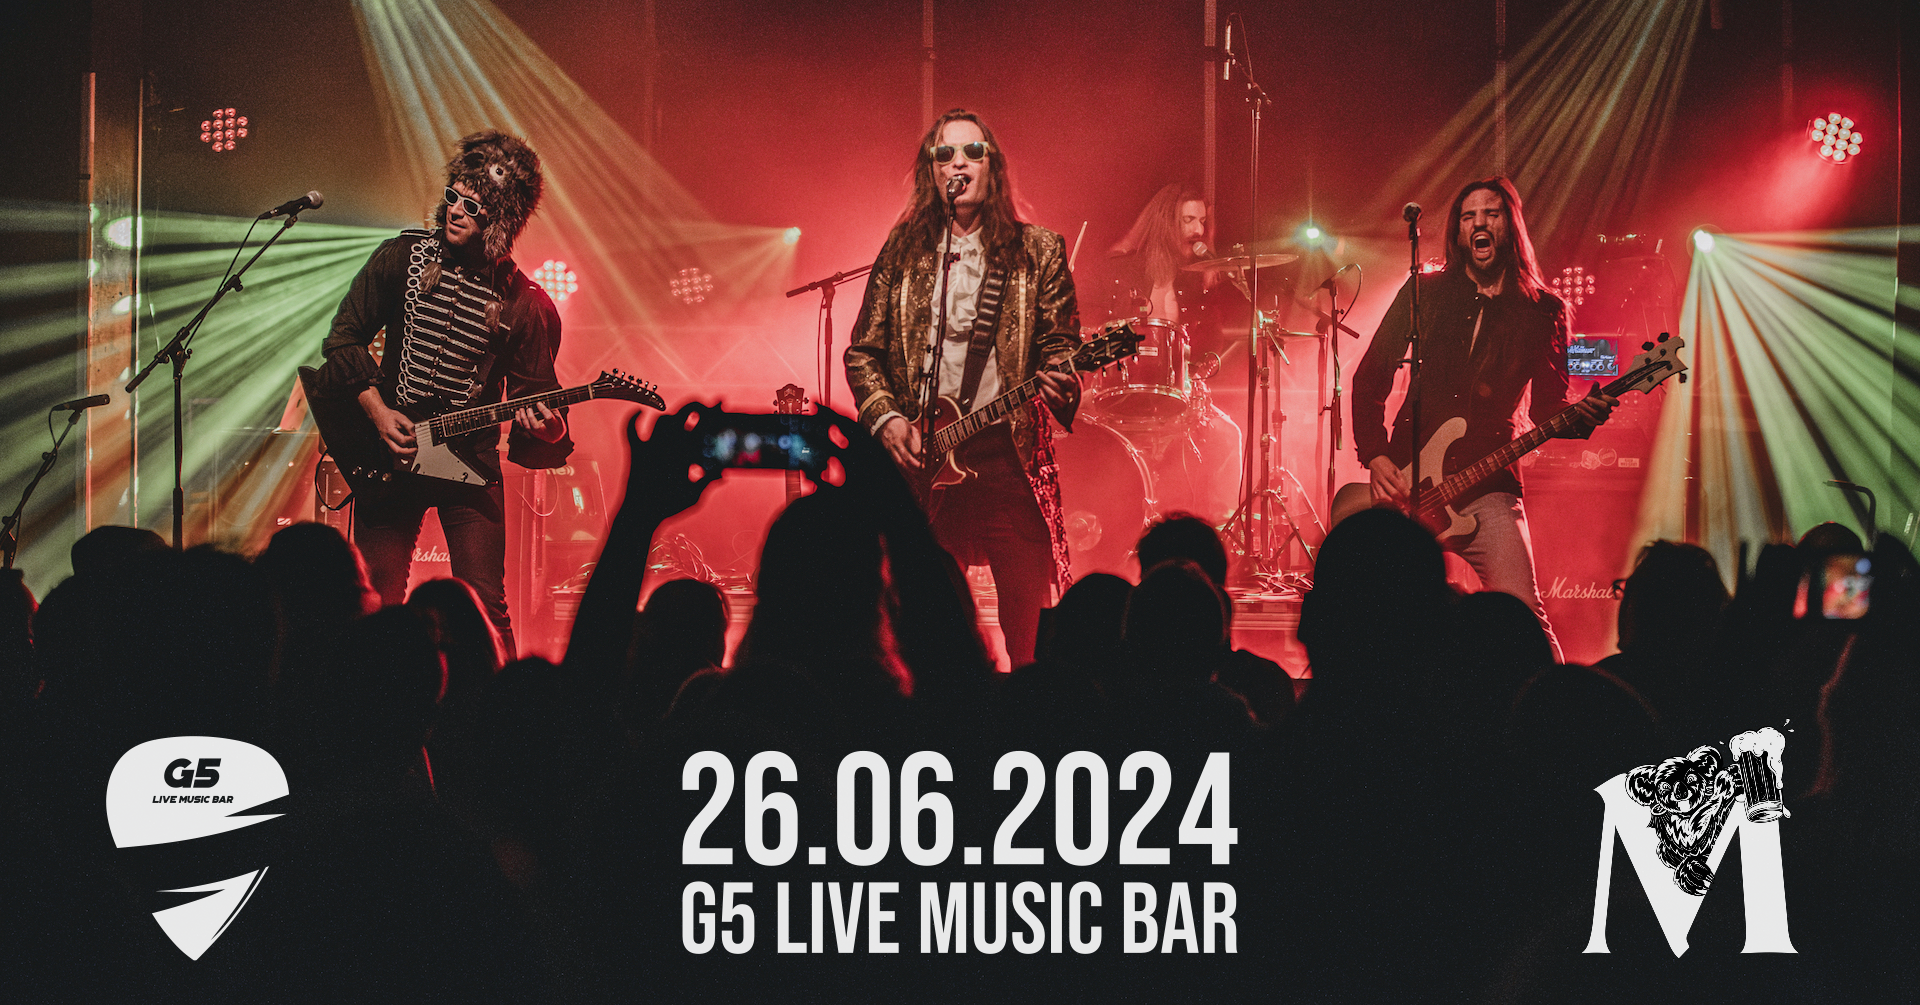 Metternich am 26. June 2024 @ G5 Live-Music-Bar.